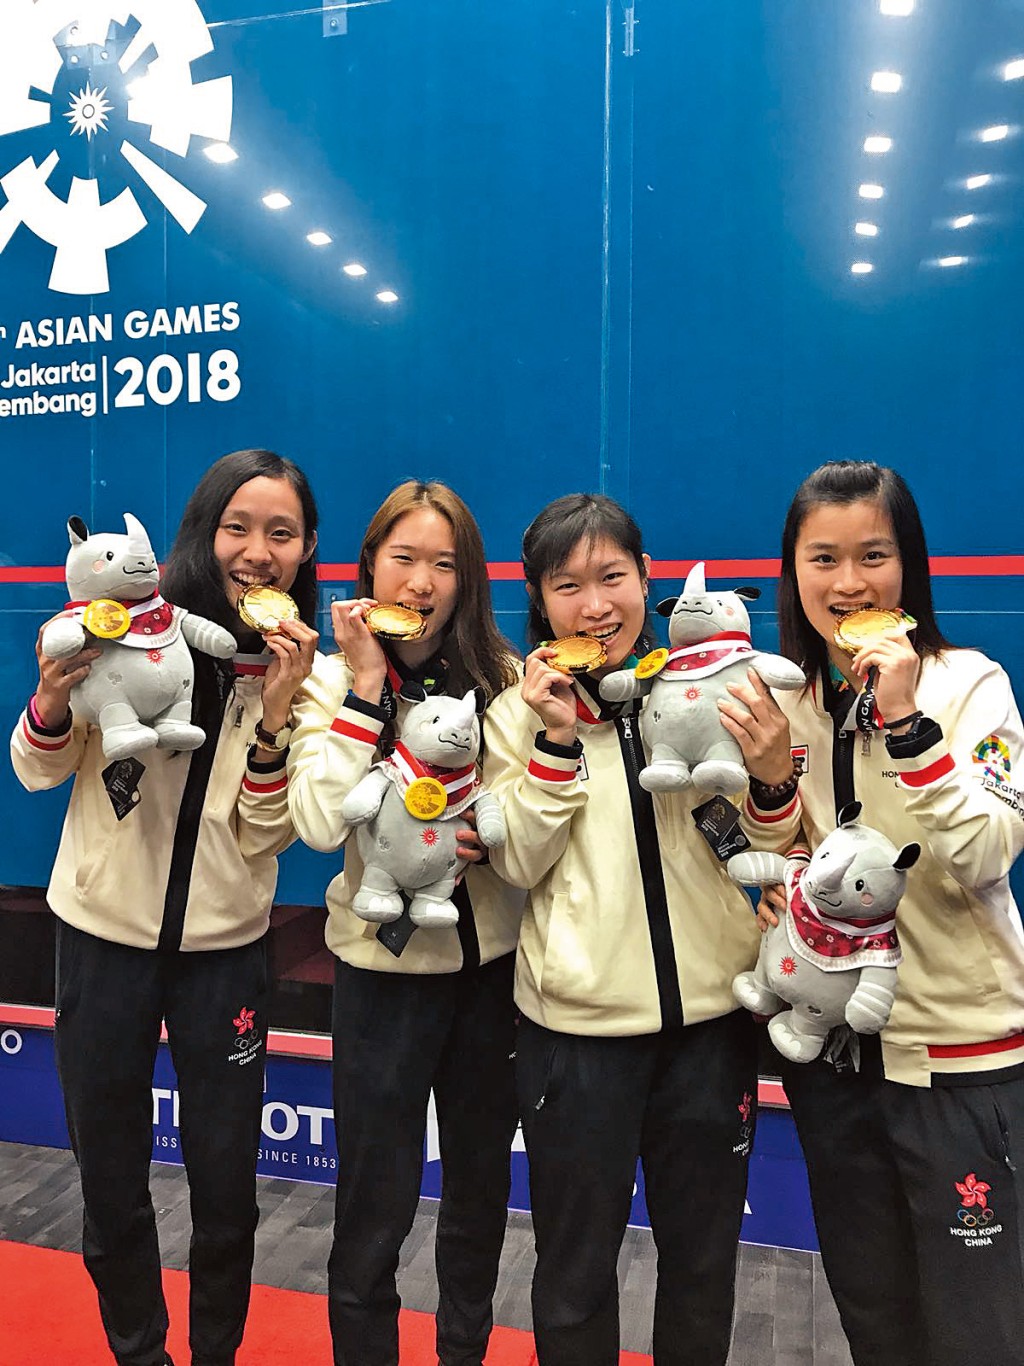 繼二〇一八協助女子隊拿下歷史性團體金牌，何子樂上年接棒續戰杭州亞運，連續兩屆集齊金銀銅三色獎牌。